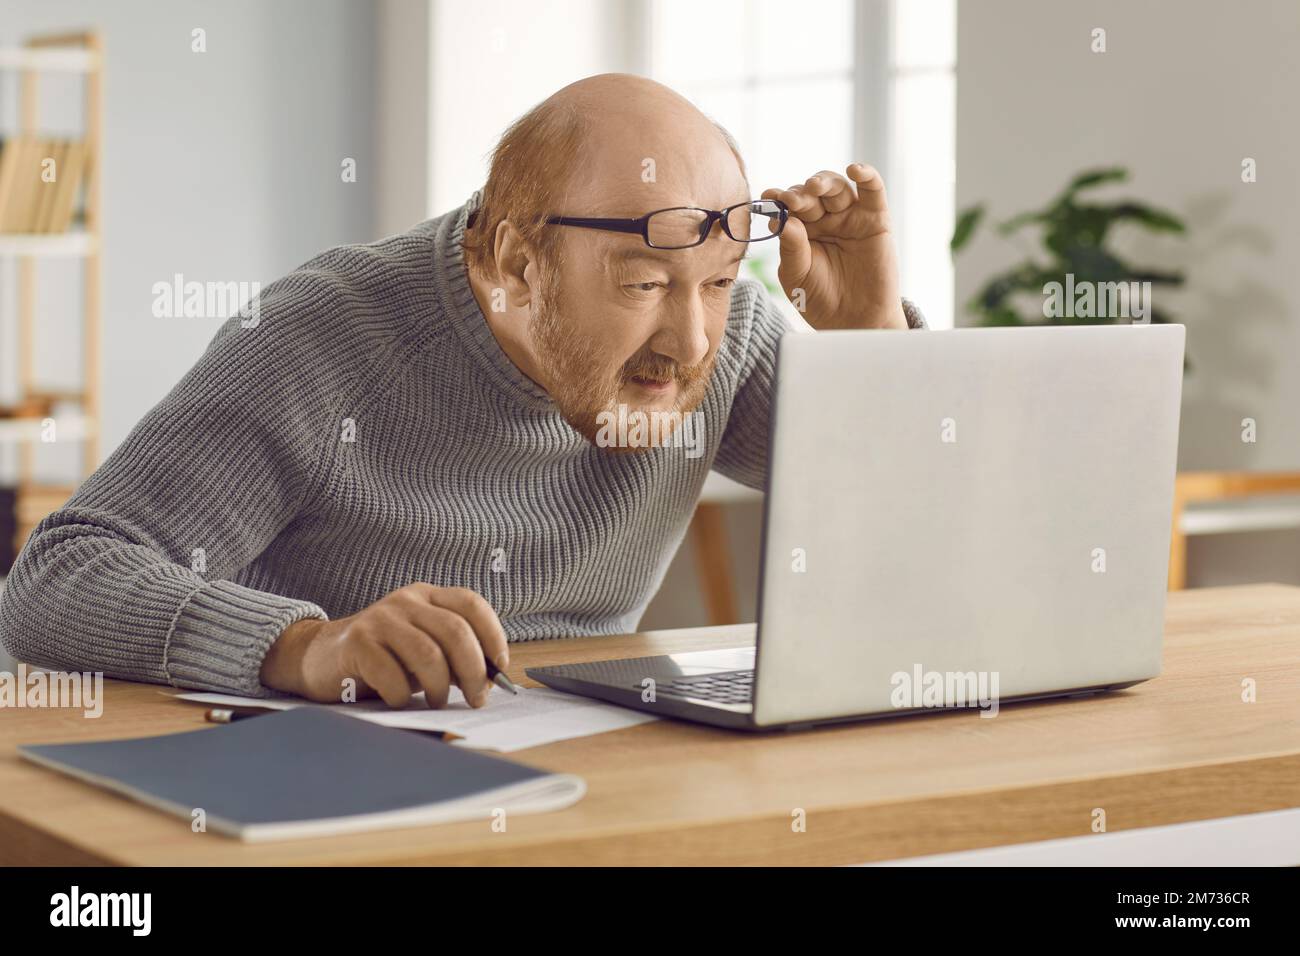 Homme mûr confus qui a une mauvaise vue et travaille sur un ordinateur portable à la maison portant des lunettes. Banque D'Images